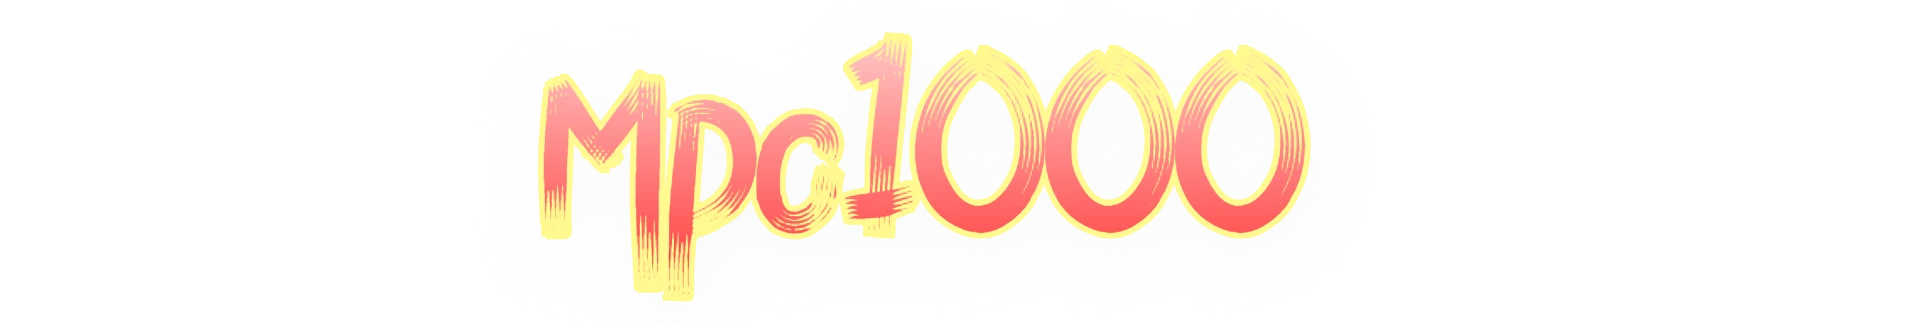 Mpo1000